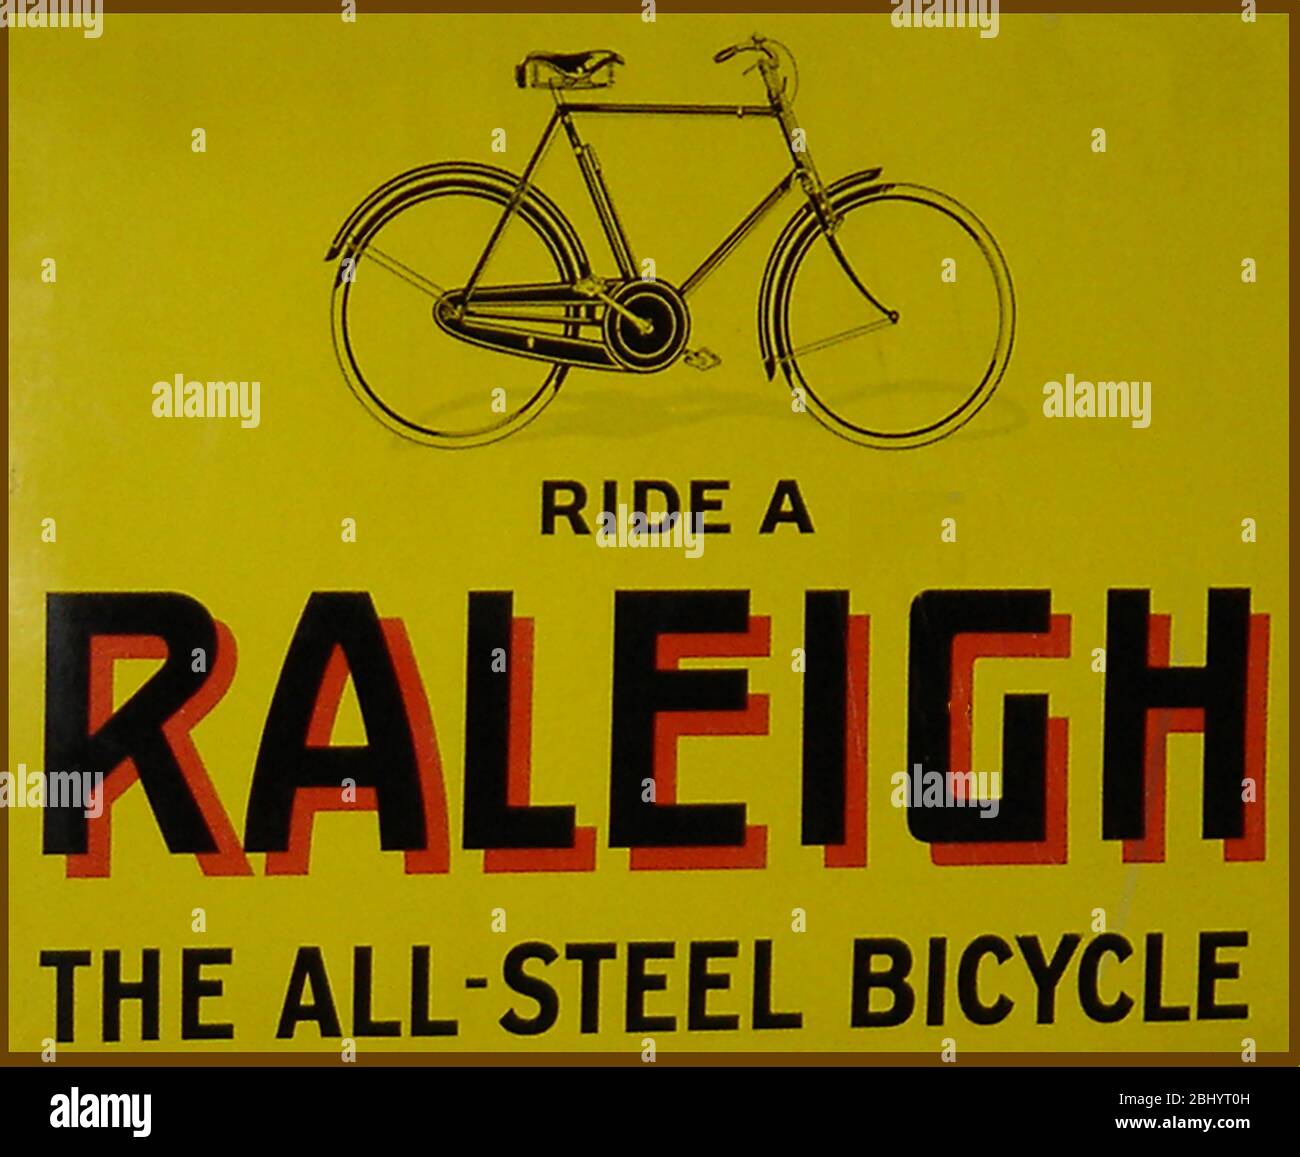 Une publicité pour les premières plaques métalliques pour les bicyclettes Raleigh. Ces derniers étaient autrefois fréquemment observés sur les gares et sur les charmes de Grande-Bretagne. Raleigh est l'une des marques de vélo les plus anciennes et les plus connues au monde. La société a été créée en 1887 à Nottingham, en Angleterre, par Sir Frank Bowden. Raleigh est devenu un leader mondial dans la fabrication de vélos, capable de produire 100 000 cycles par an et a continué à produire des pignons de moyeu 15 000 motos et boîtes de vitesses de moto. Pendant la seconde guerre mondiale, leurs usines ont été transformées en munitions de production. Banque D'Images